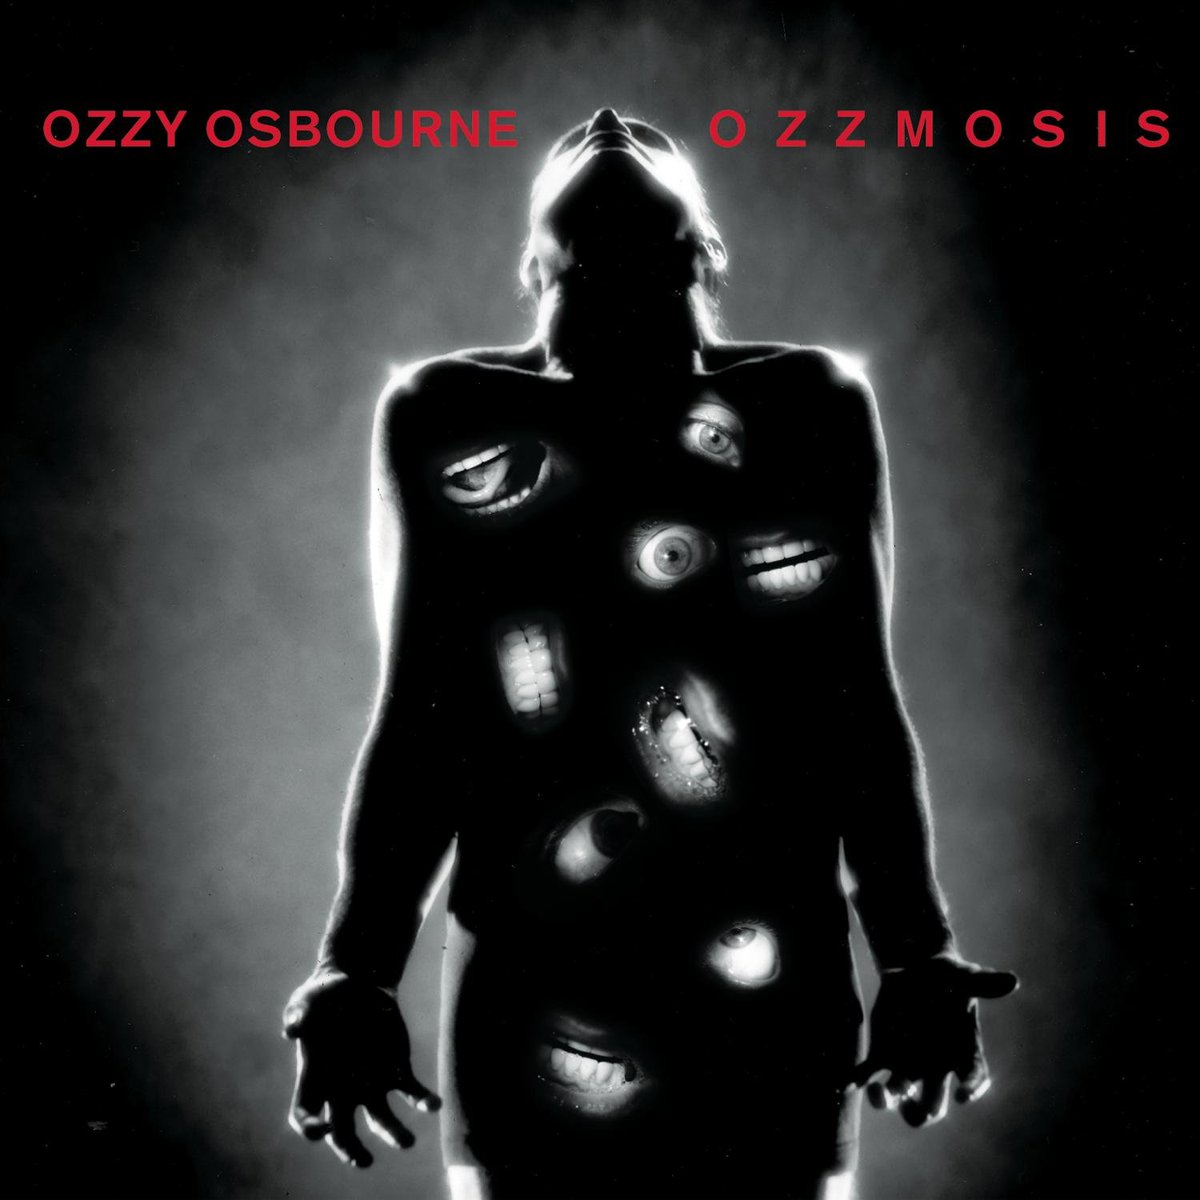 28 años del séptimo álbum de estudio 'Ozzmosis' de 
Ozzy Osbourne #perrymason #seeyouontheotherside #ijustwantyou